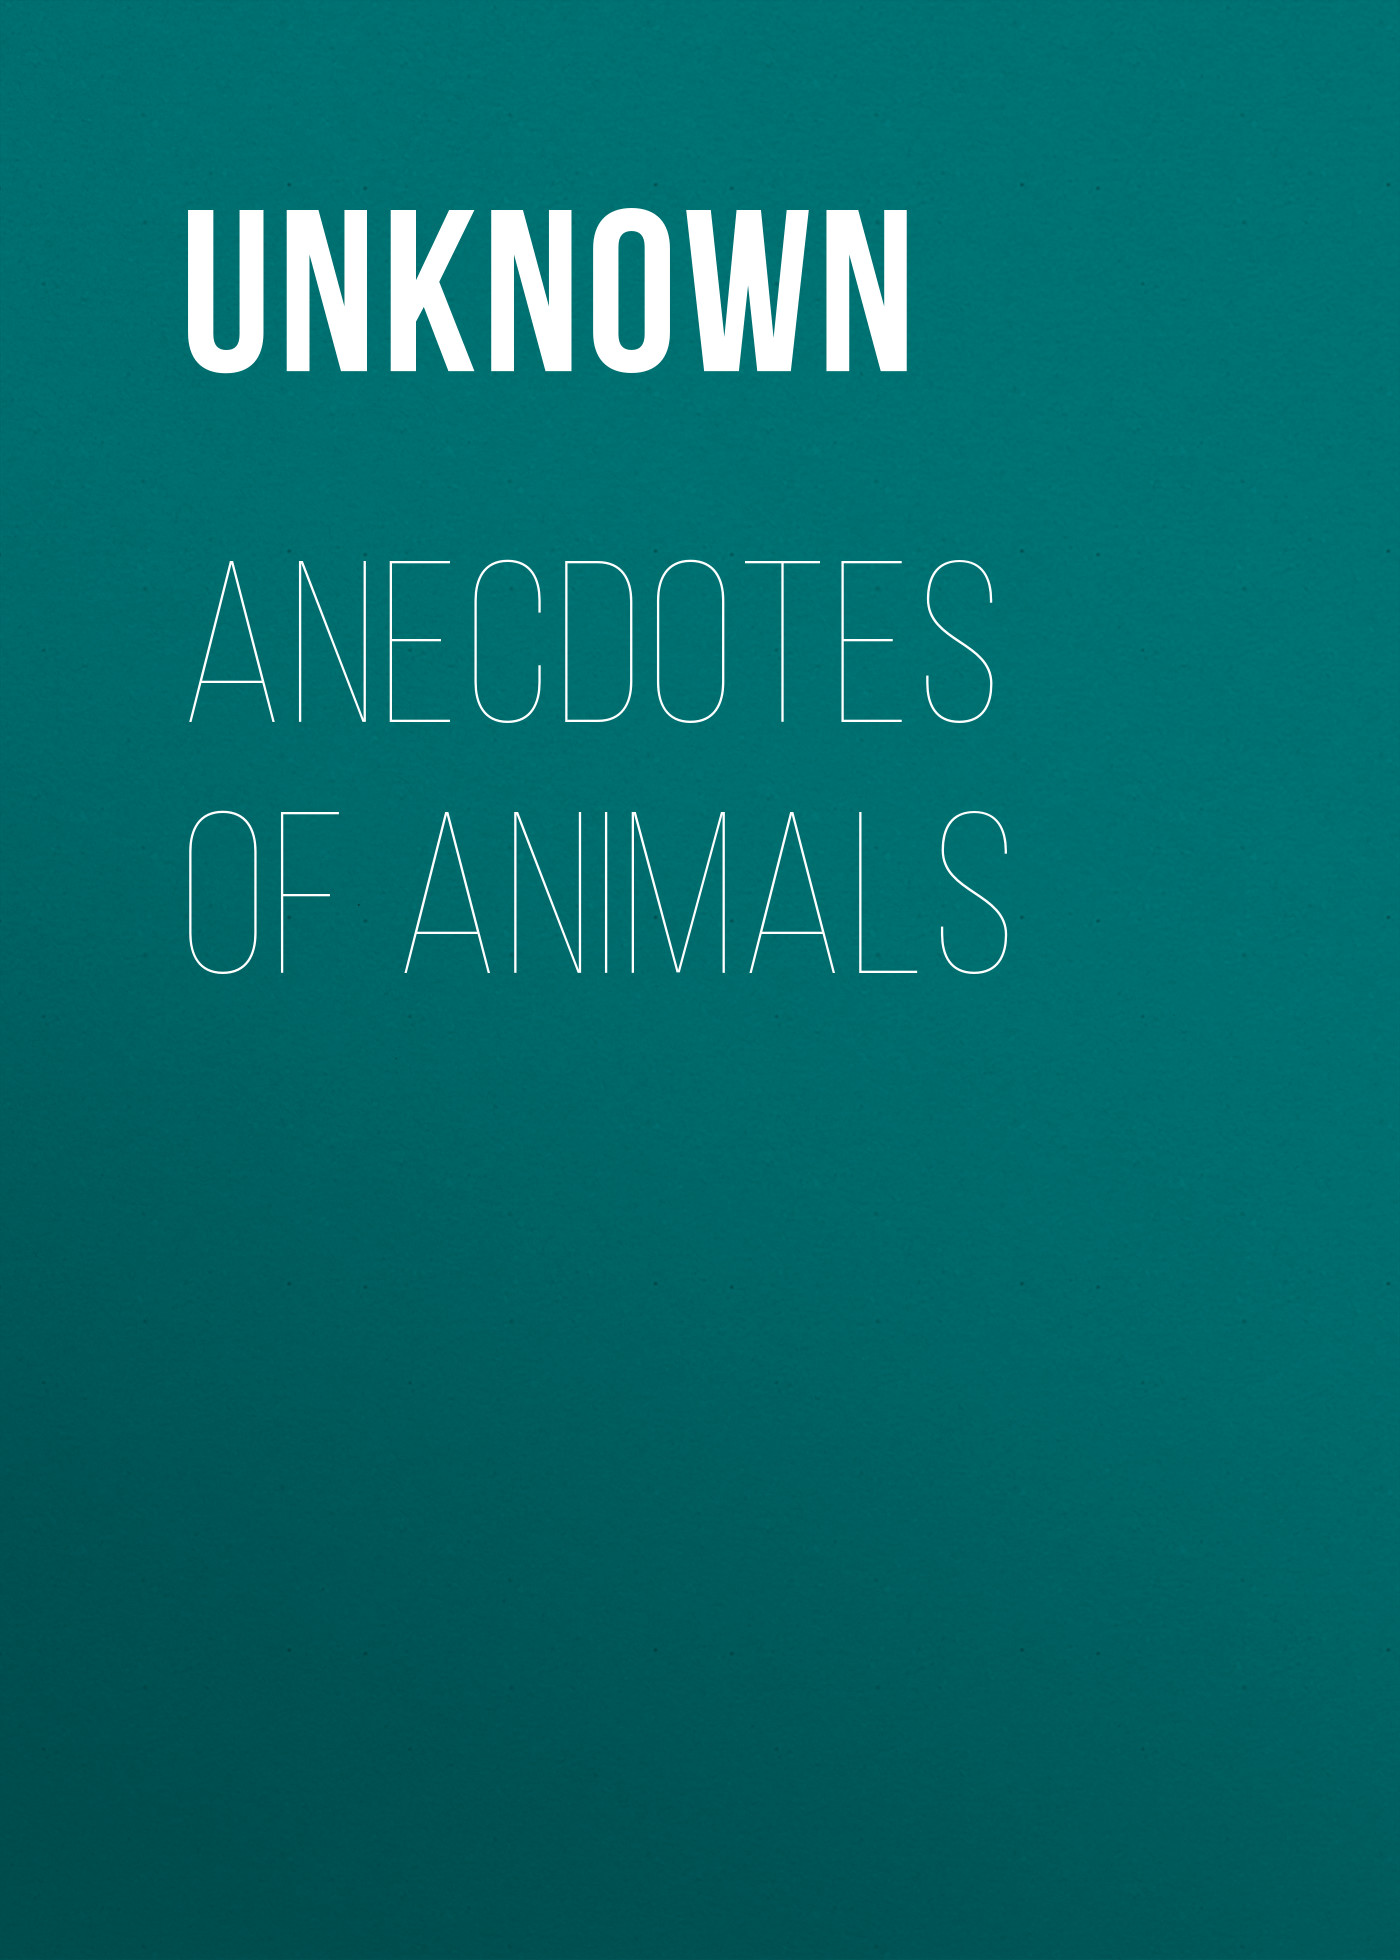 Книга Anecdotes of Animals из серии , созданная  Unknown, может относится к жанру Зарубежная классика, Зарубежная старинная литература. Стоимость электронной книги Anecdotes of Animals с идентификатором 35495223 составляет 0 руб.